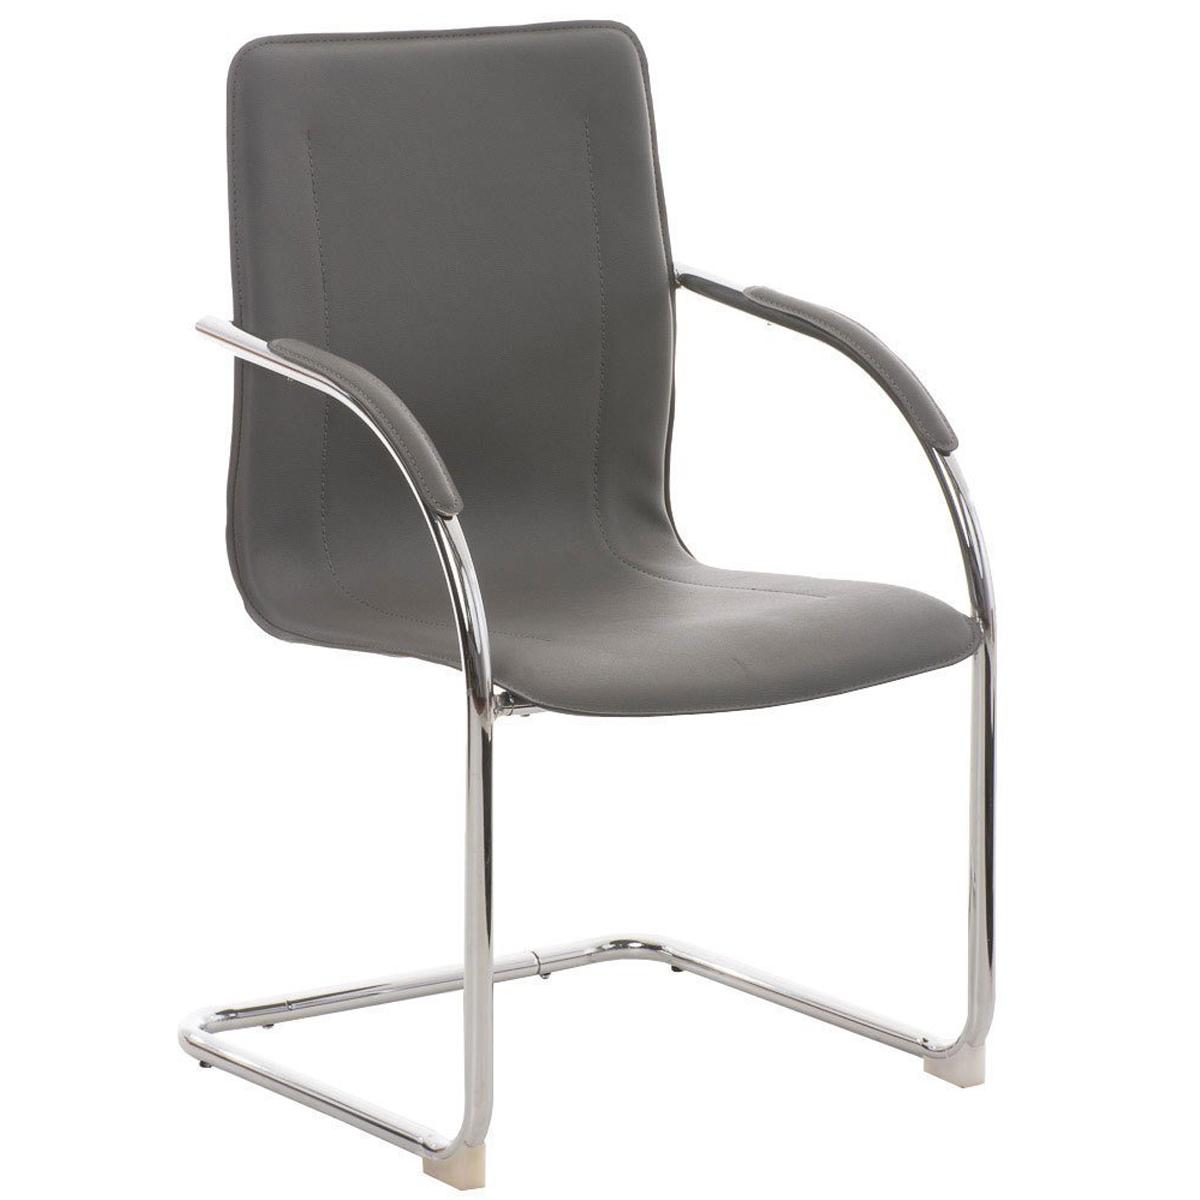 Cadeira de Visita FLAP, Estrutura Metálica, Design Moderno, Em Pele, Cor Cinzento